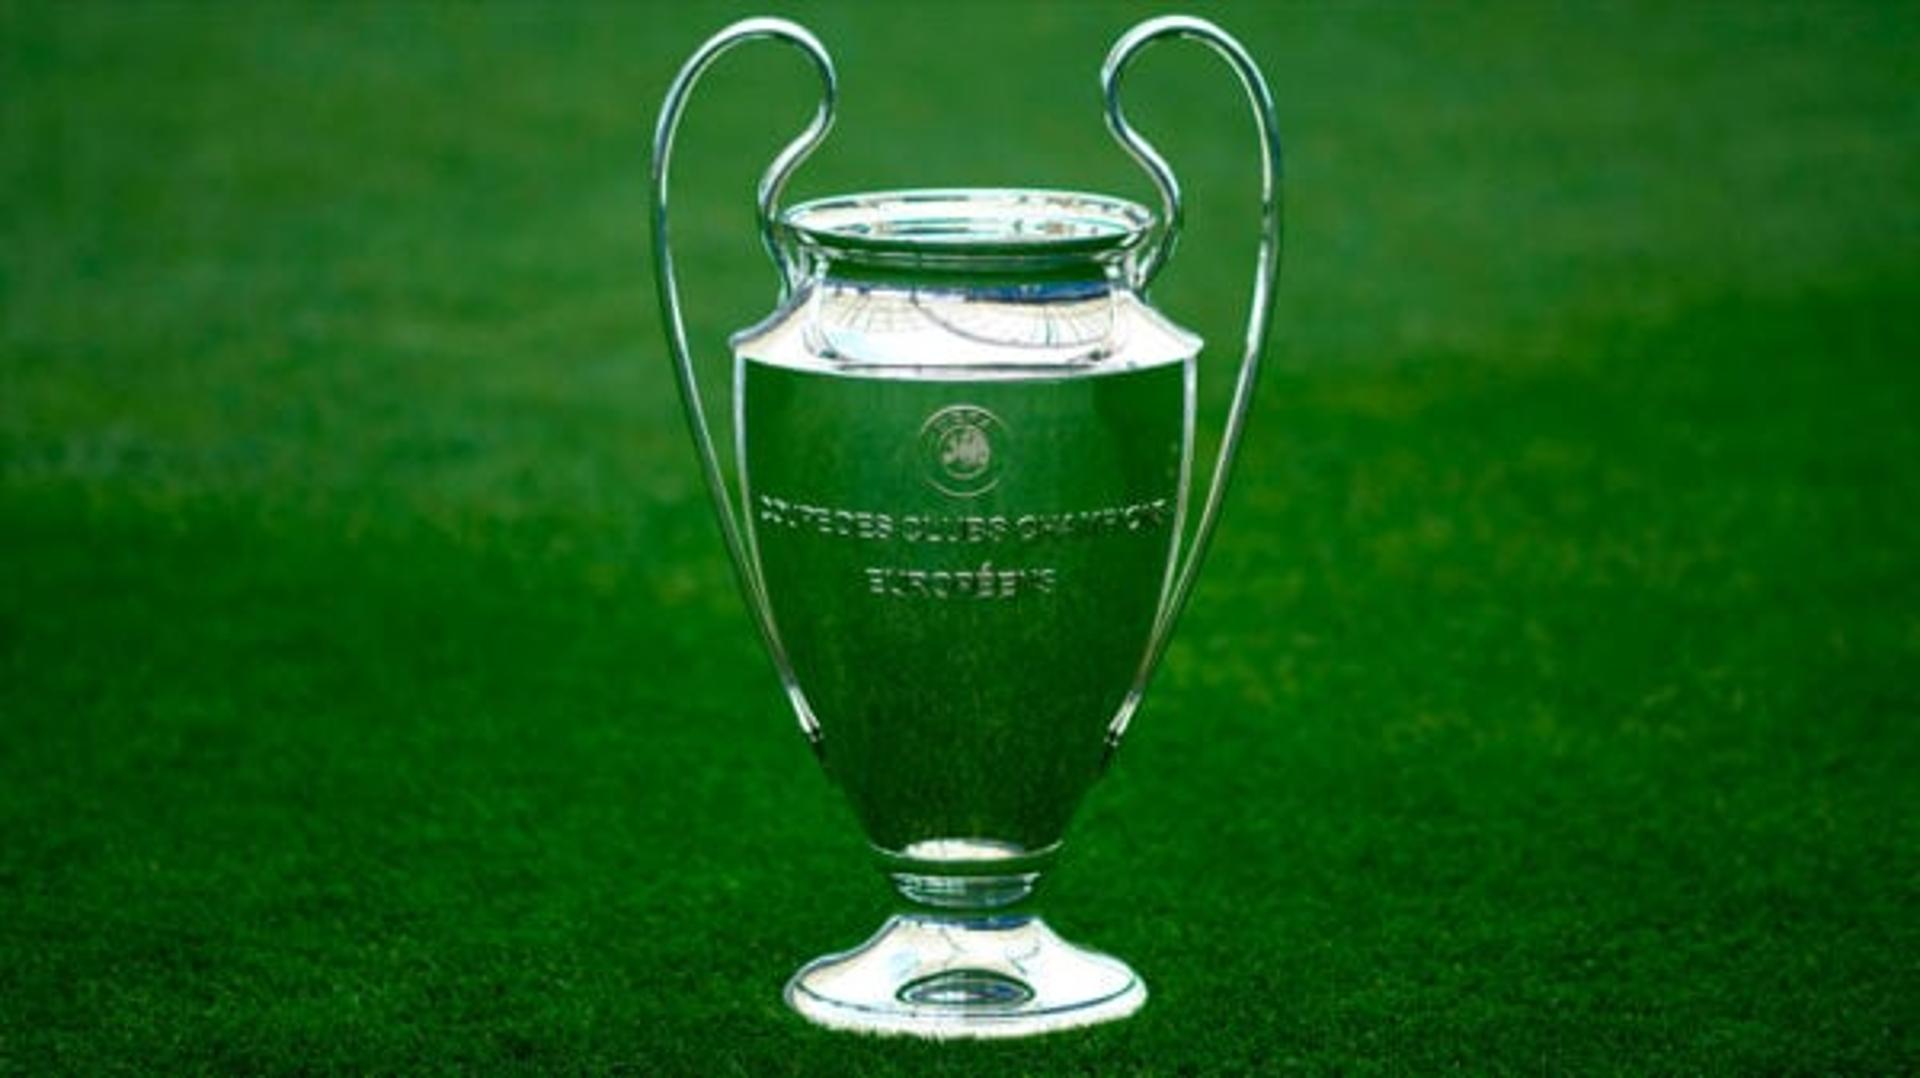 Taça da Champions League